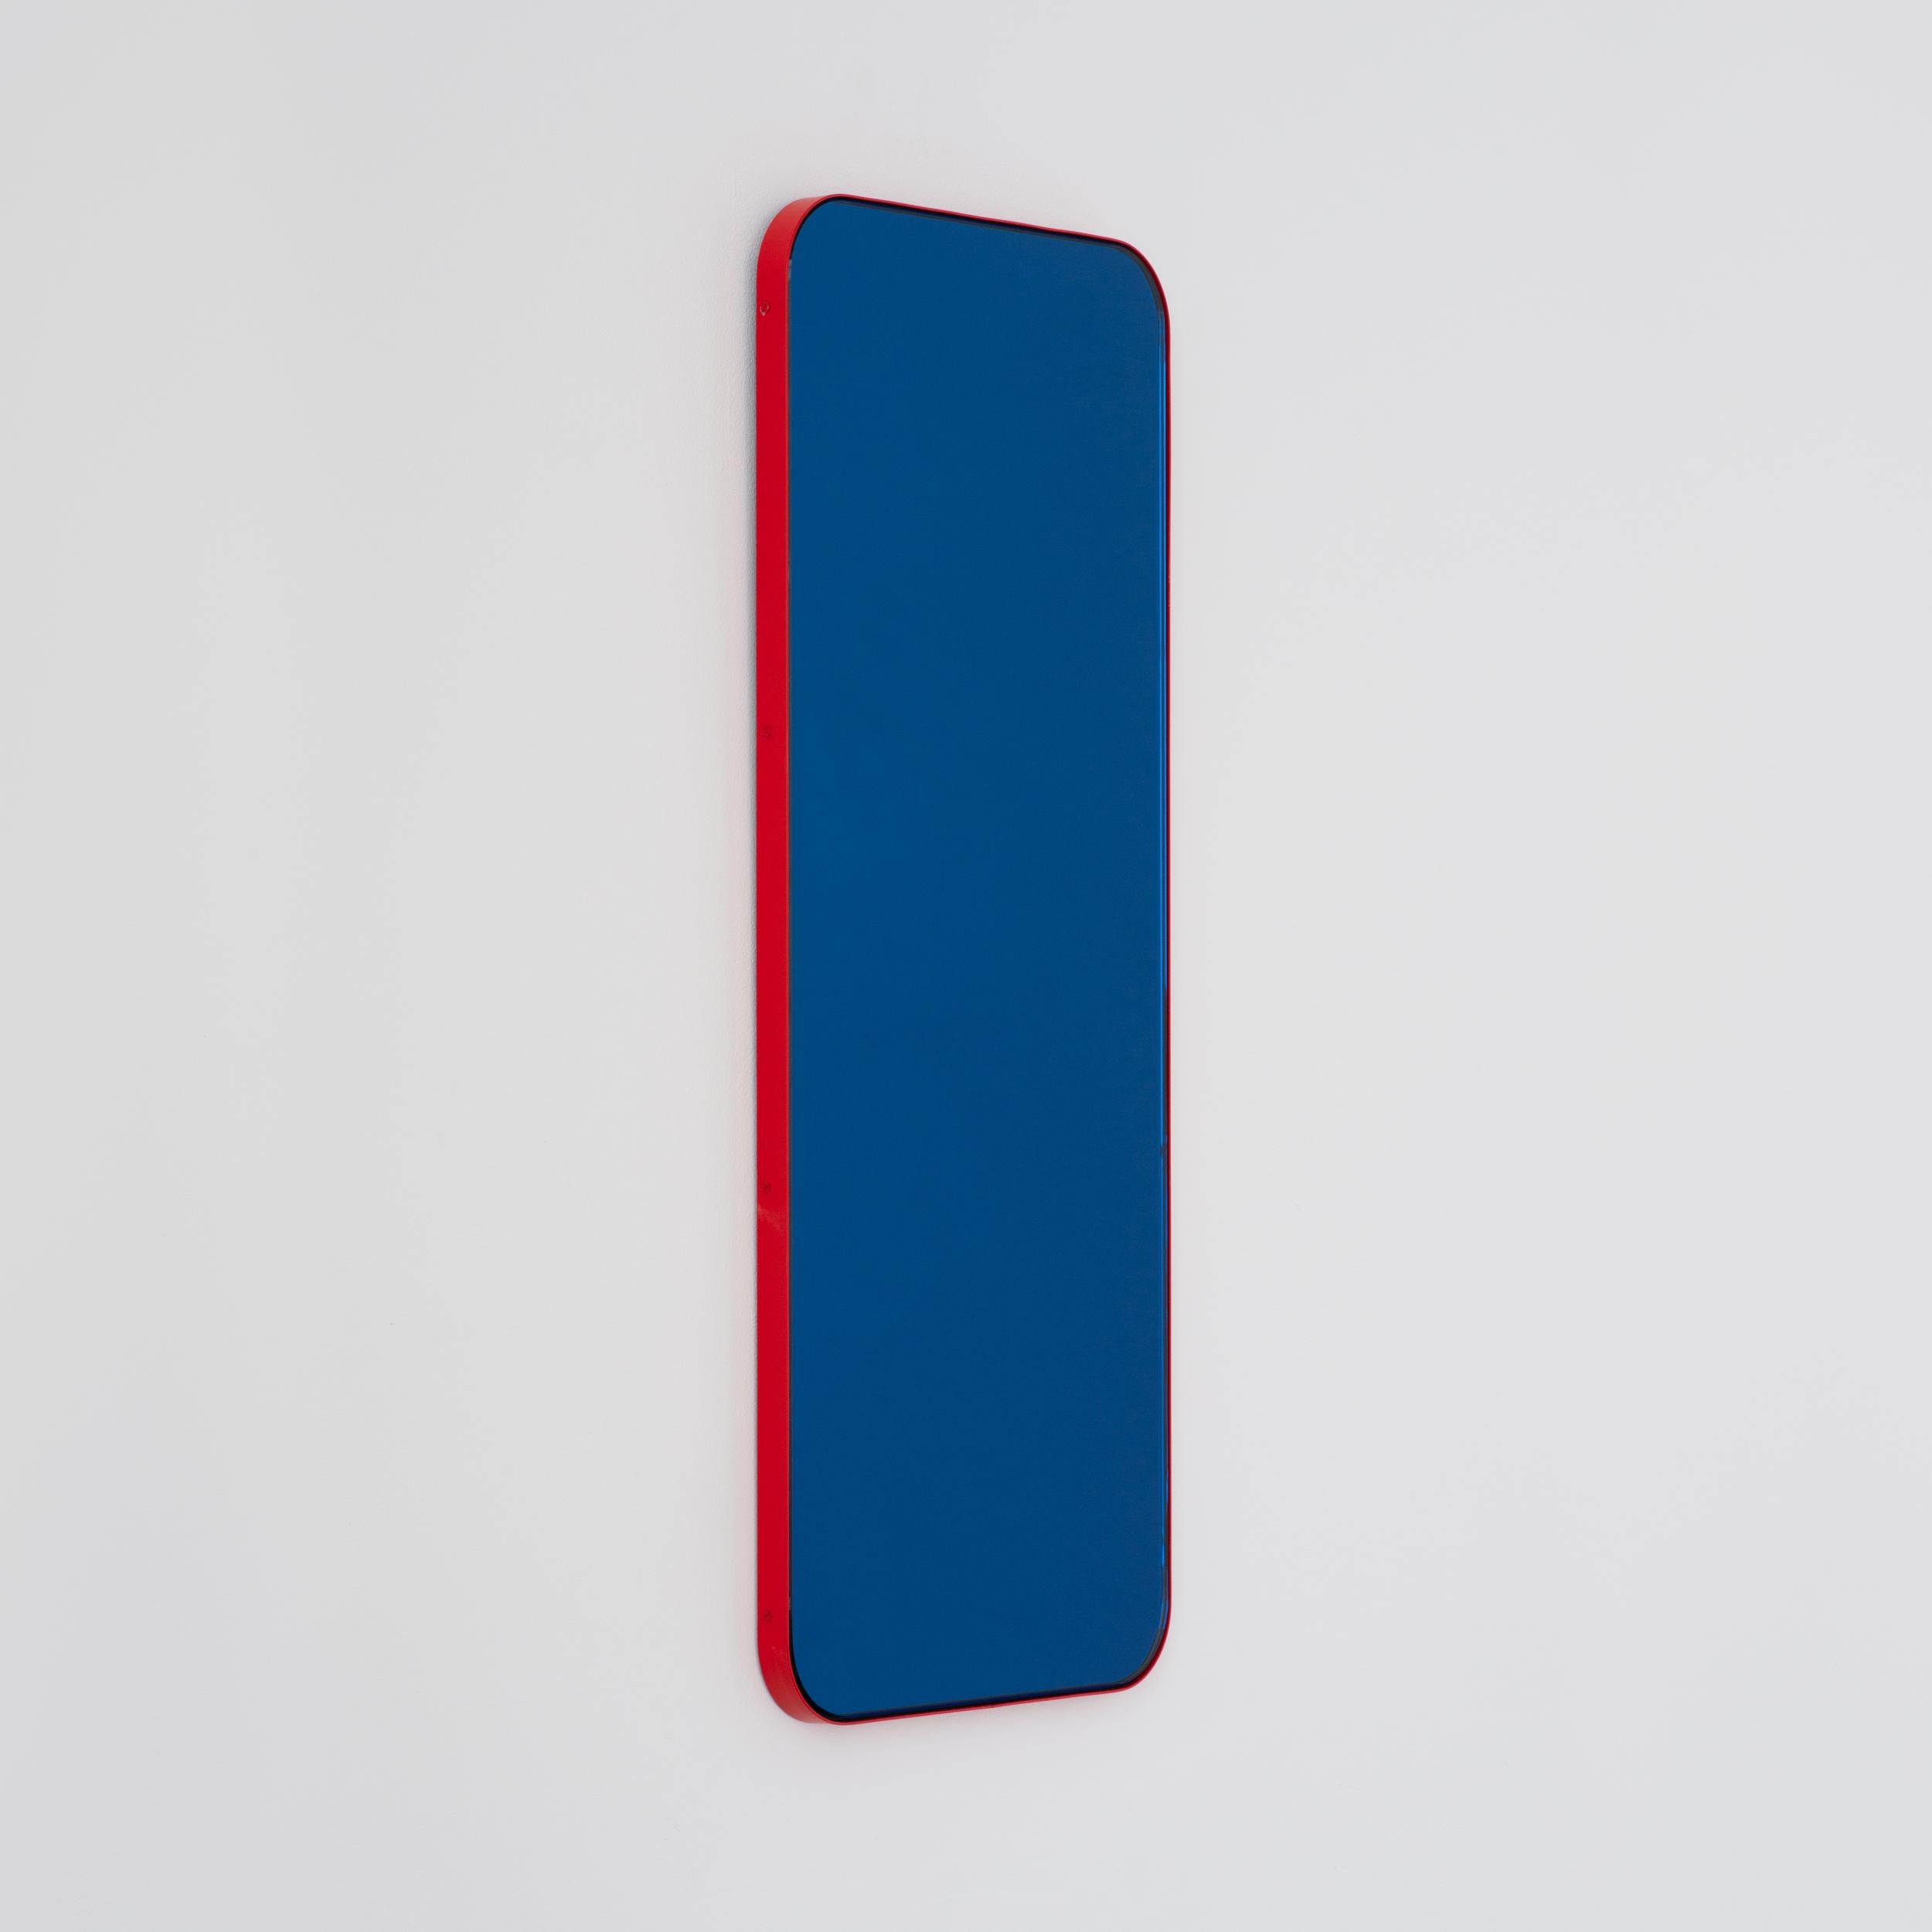 Miroir rectangulaire contemporain teinté de bleu avec un cadre rouge moderne. Une partie de la charmante collection Quadris™, conçue et fabriquée à la main à Londres, au Royaume-Uni. 

Fourni avec une barre en z spécialisée pour une installation